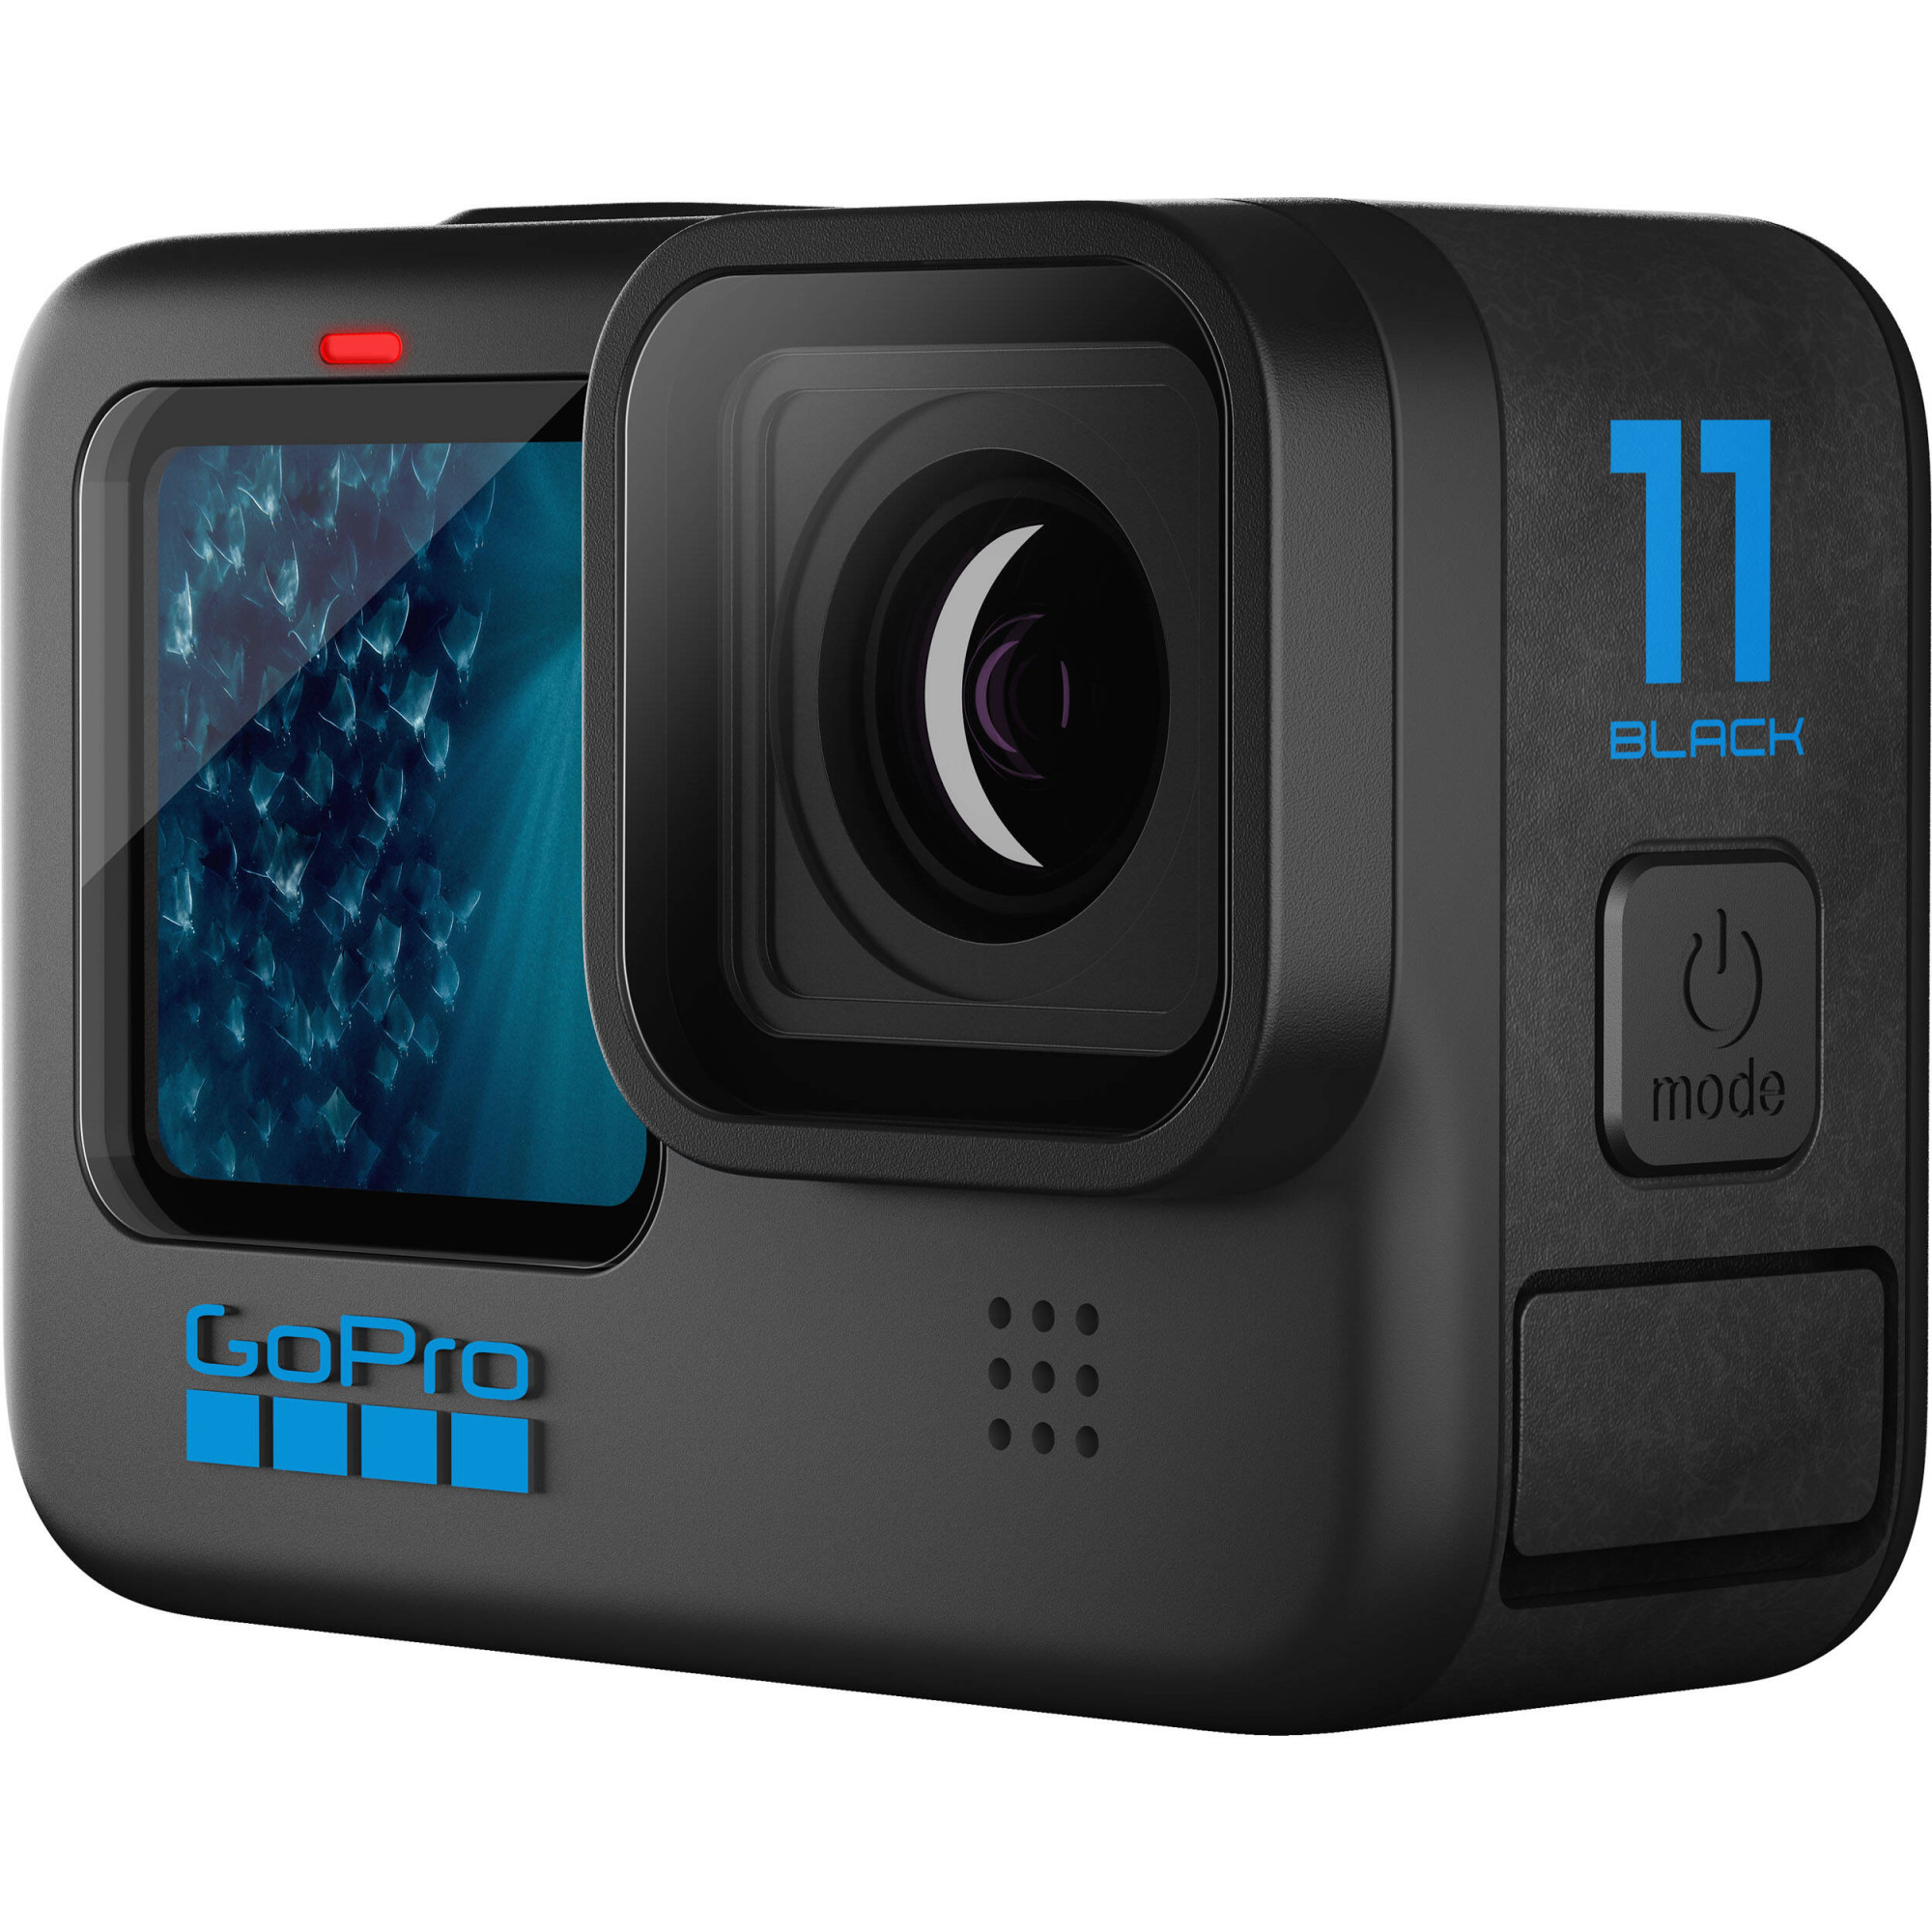 GoPro Hero 11 Black: Hãy truy cập hình ảnh này để ngắm nhìn sự hoàn hảo của GoPro Hero 11 Black. Với tính năng chống rung tuyệt vời, khả năng quay phim 4K tuyệt đỉnh và nhiều tính năng khác, chiếc camera này xứng đáng là một trong những sản phẩm tốt nhất thị trường hiện nay.